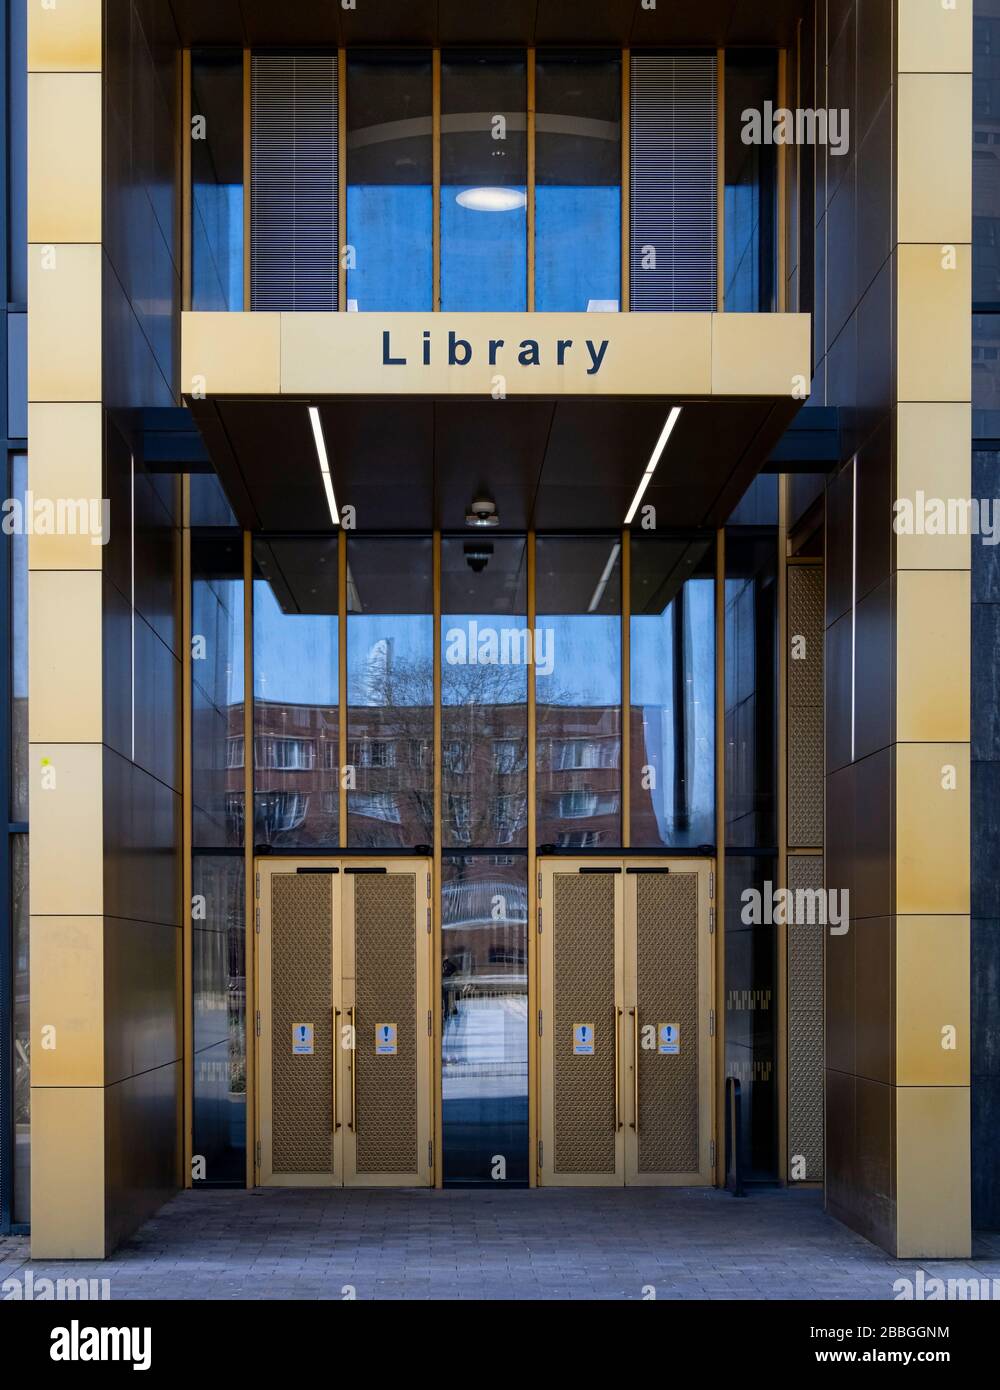 Entrée principale de la bibliothèque, campus de l'Université de Birmingham, Birmingham, West Midlands, Angleterre, Royaume-Uni Banque D'Images